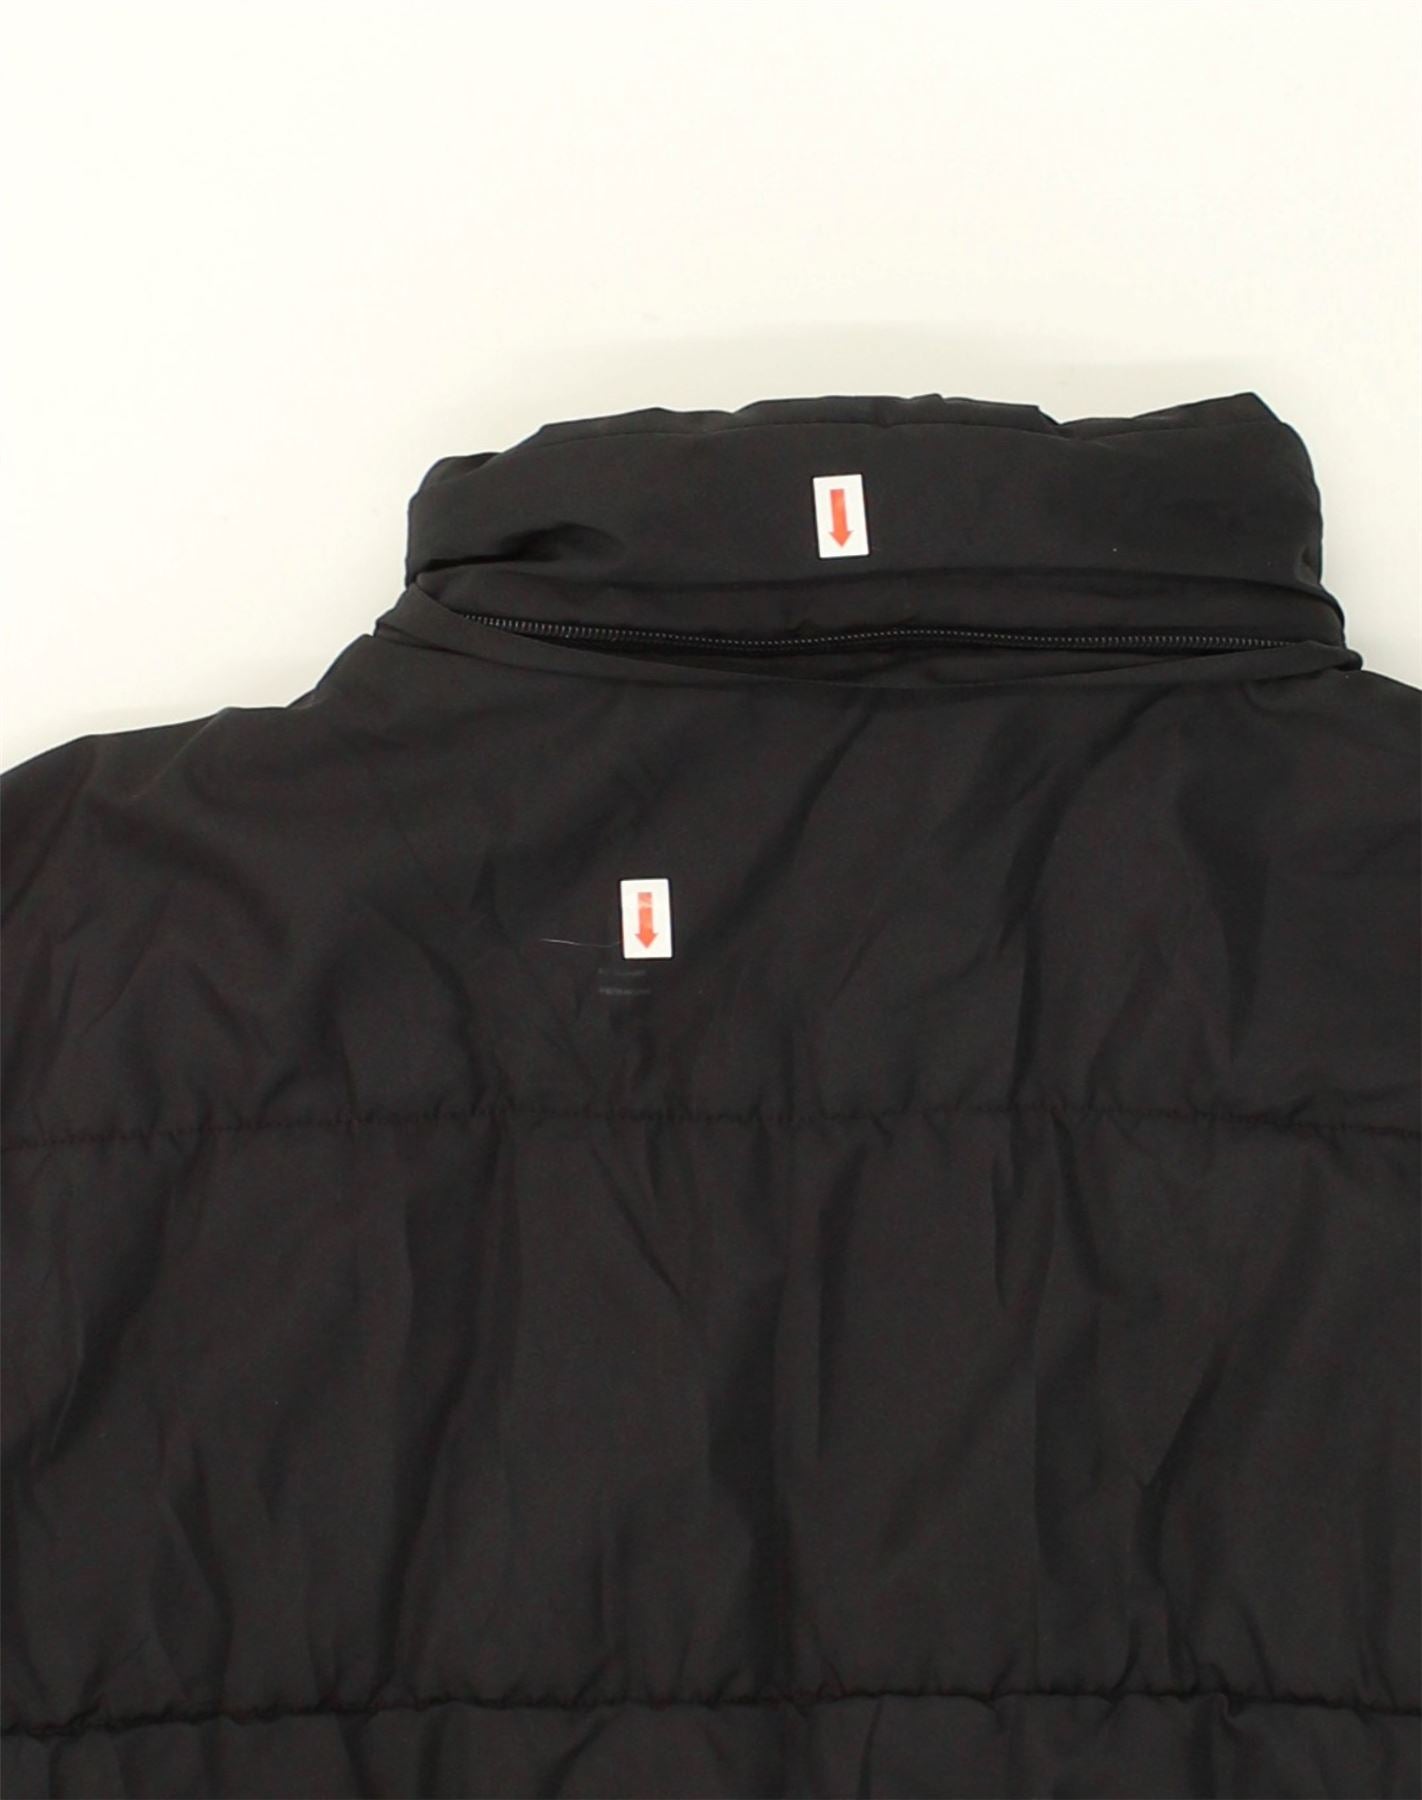 FILA Womens Padded Jacket UK 16 Large Black Nylon